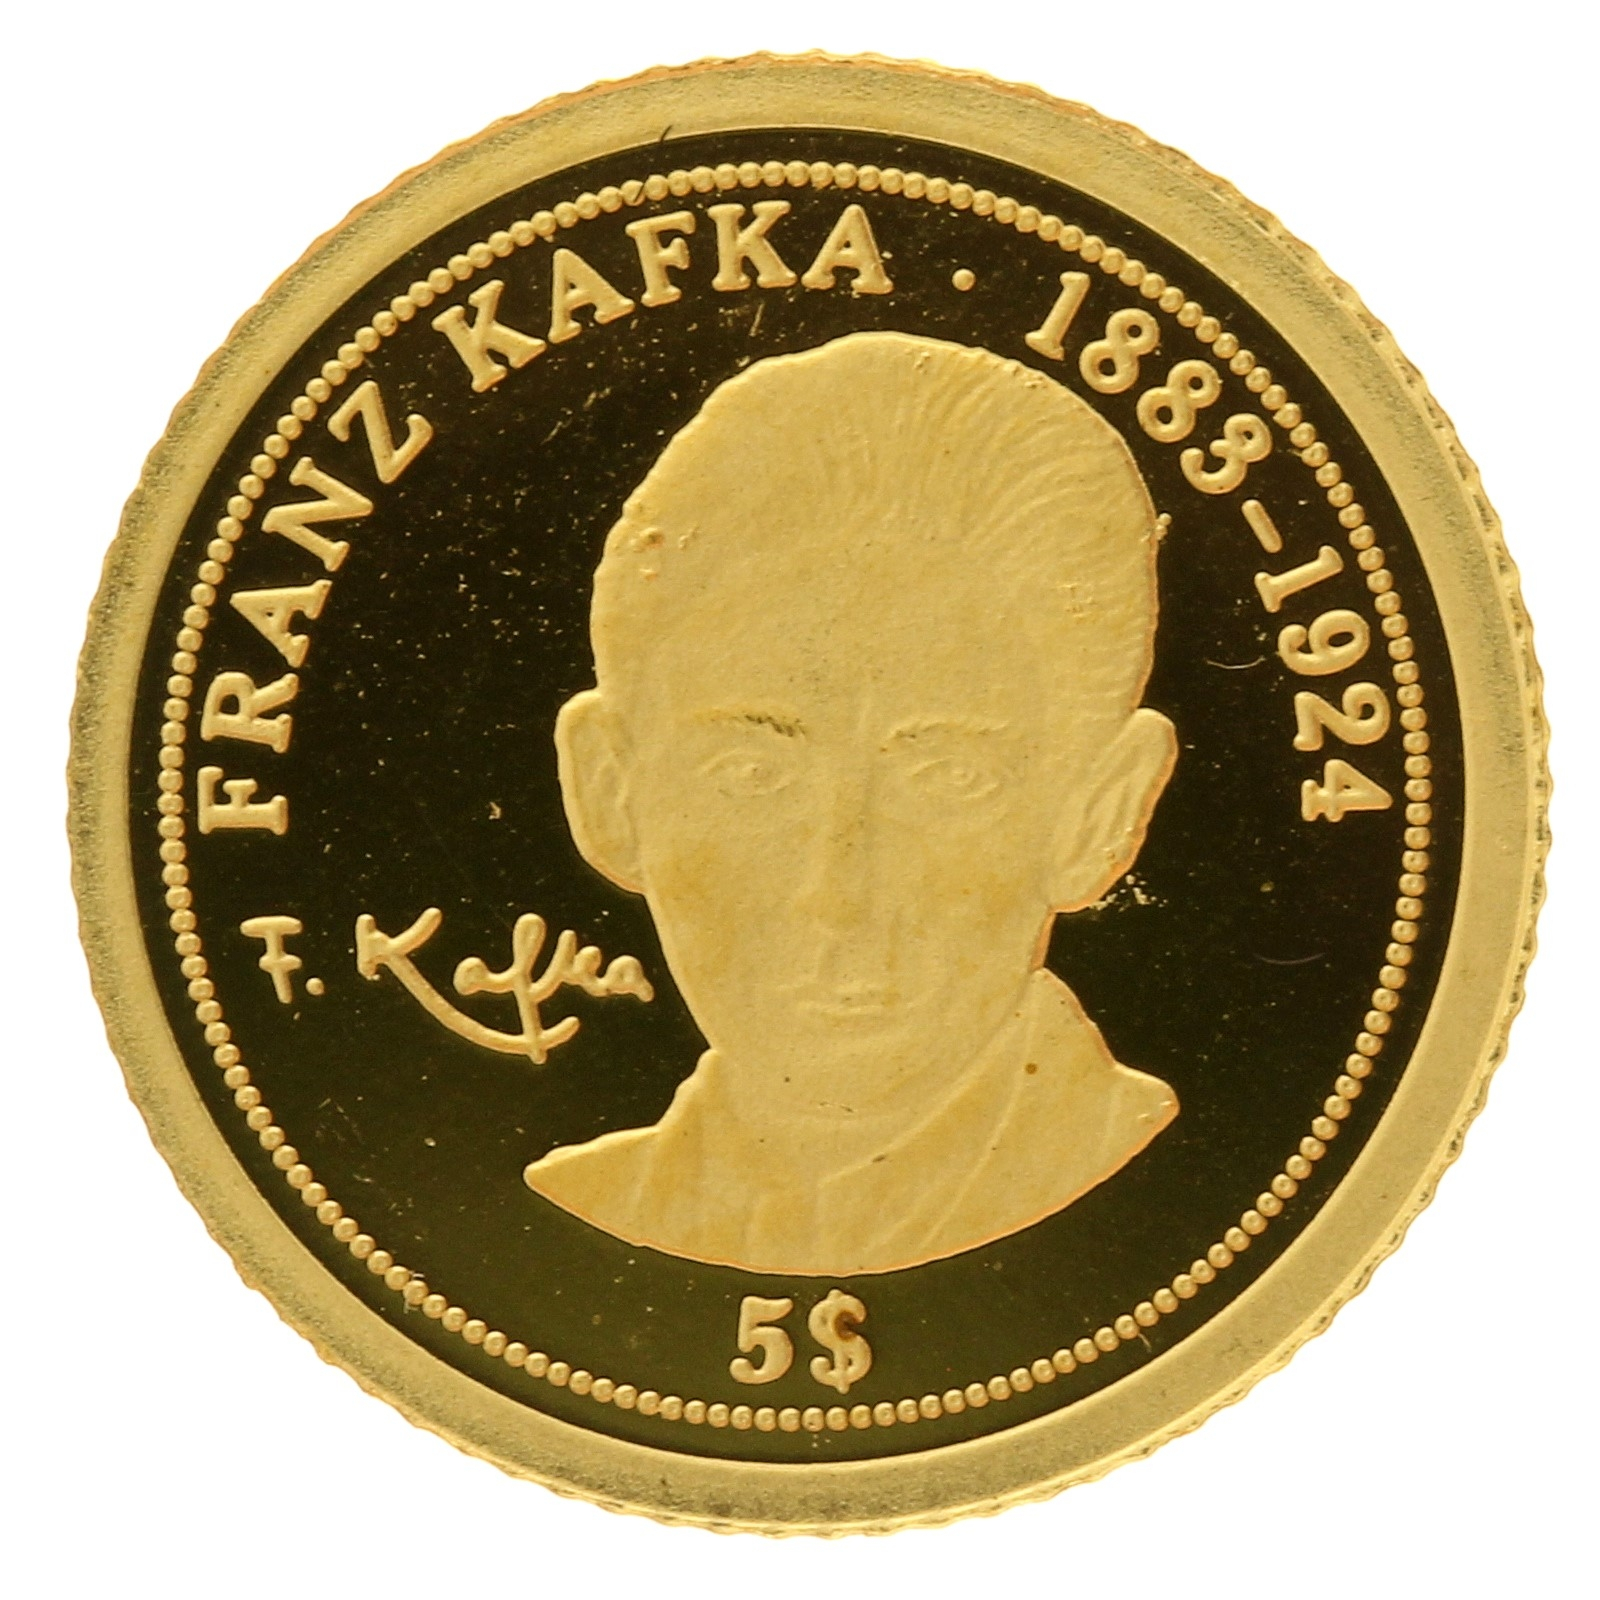 Nauru - 5 Dollars - 2008 - Elizabeth II - Franz Kafka